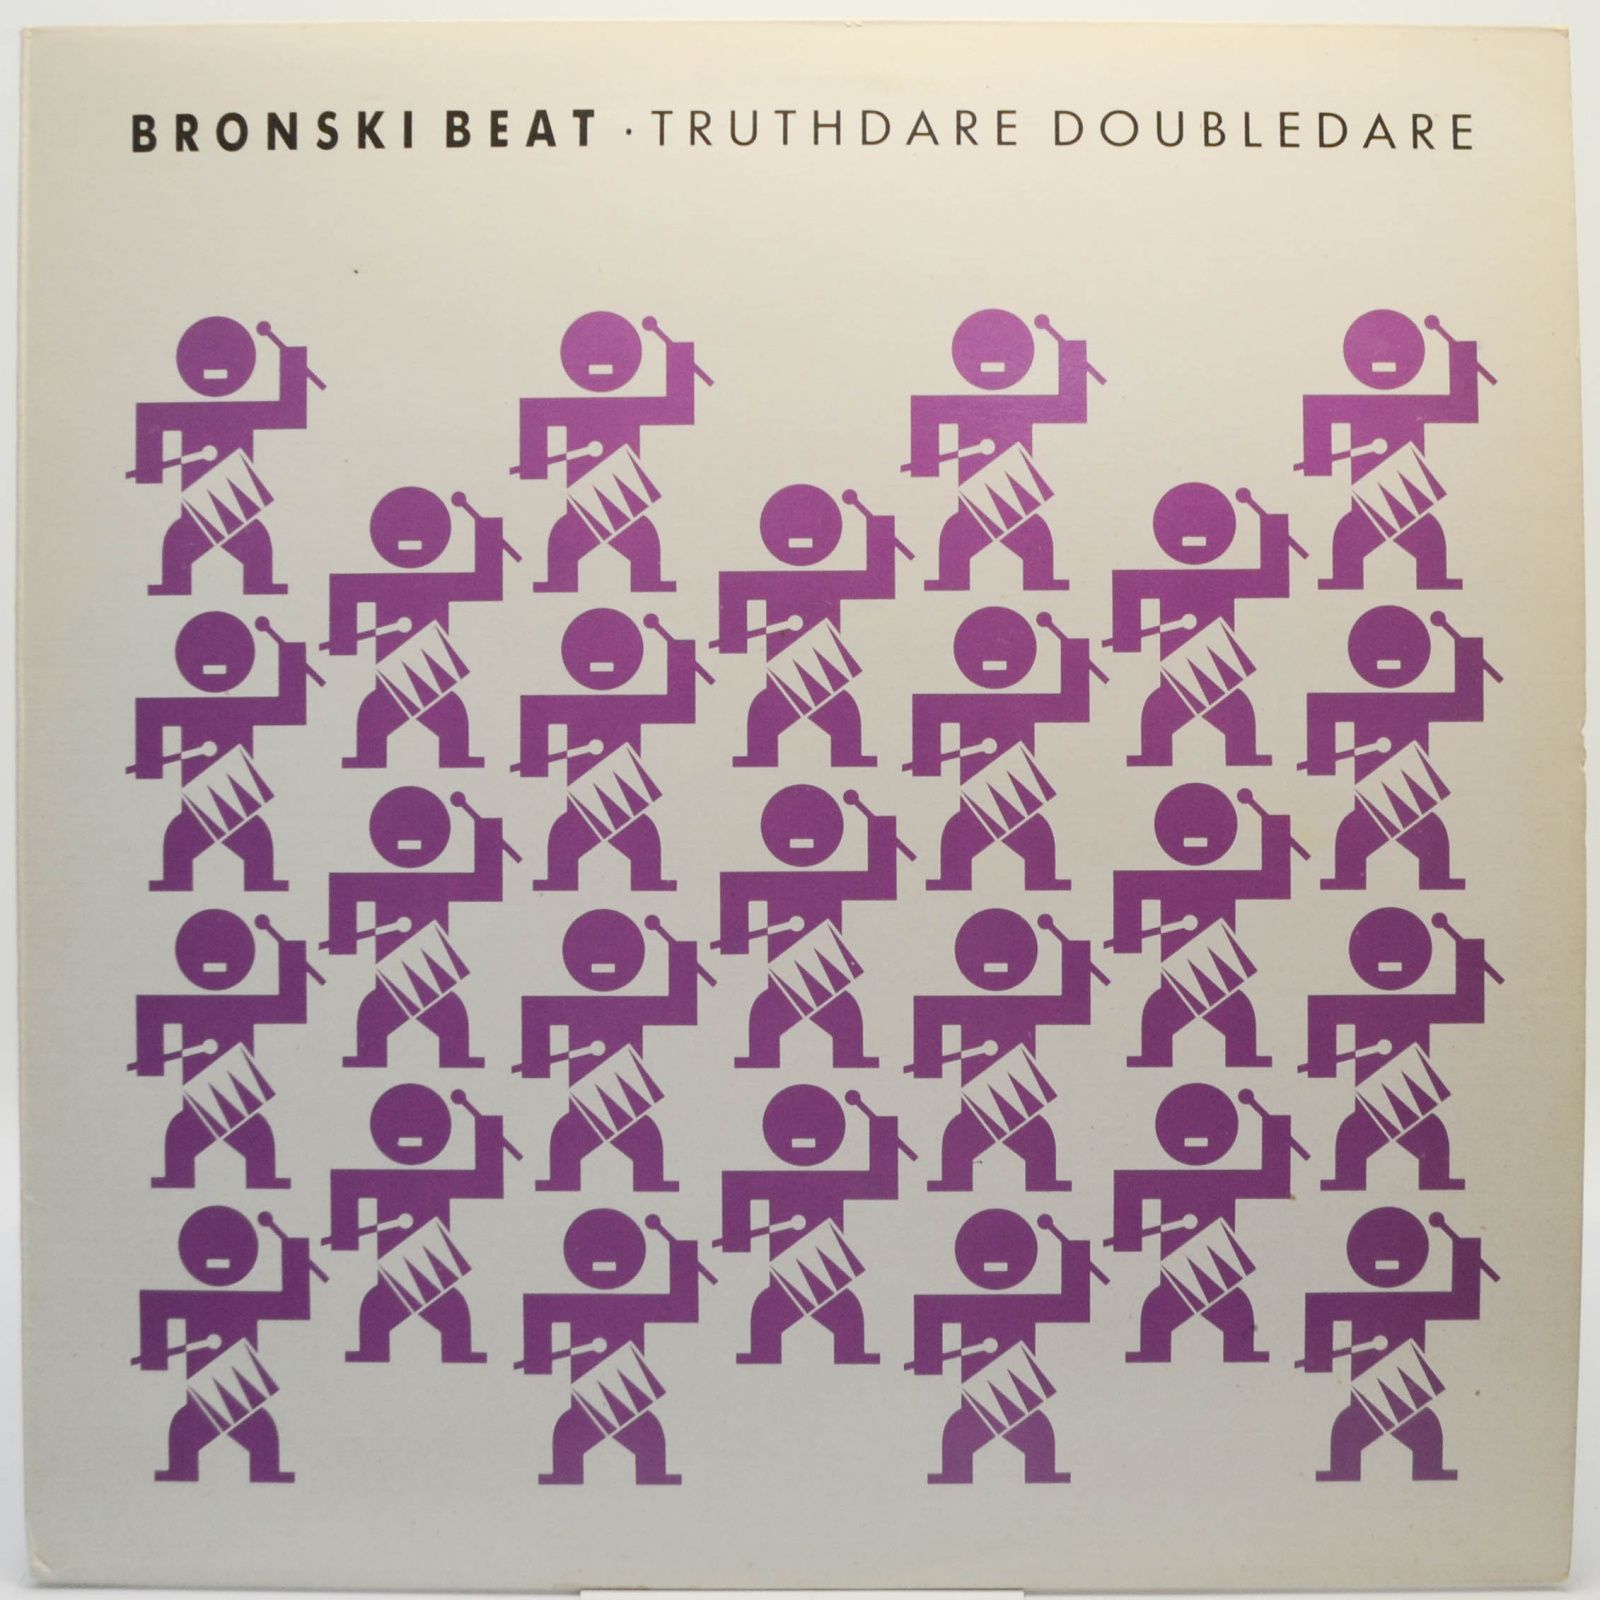 Truthdare Doubledare, 1986